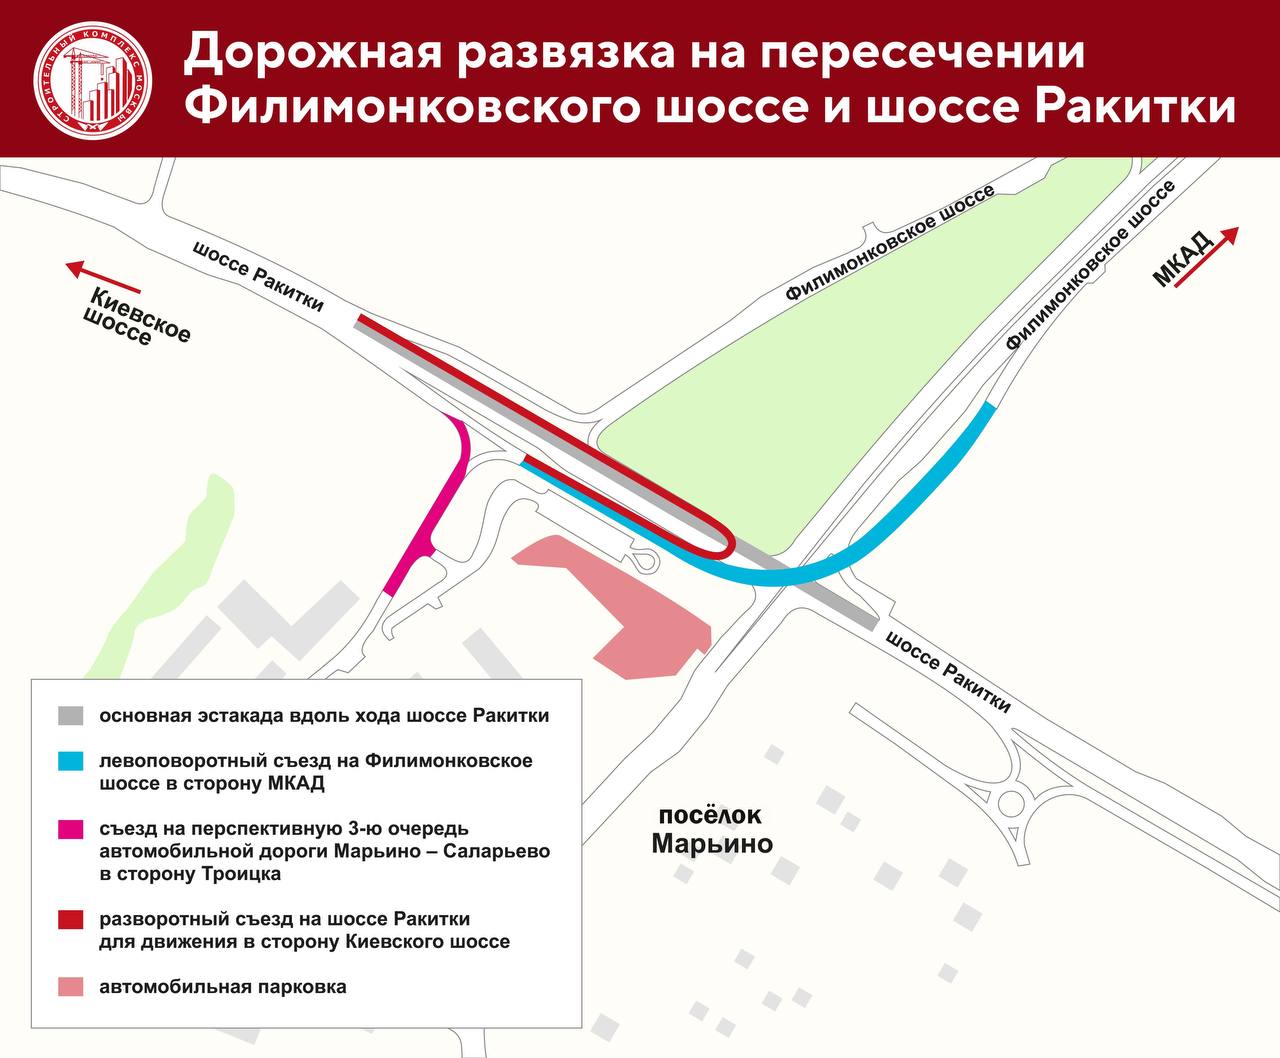 Развязку построят в новой Москве на пересечении шоссе Филимонковское и Ракитки